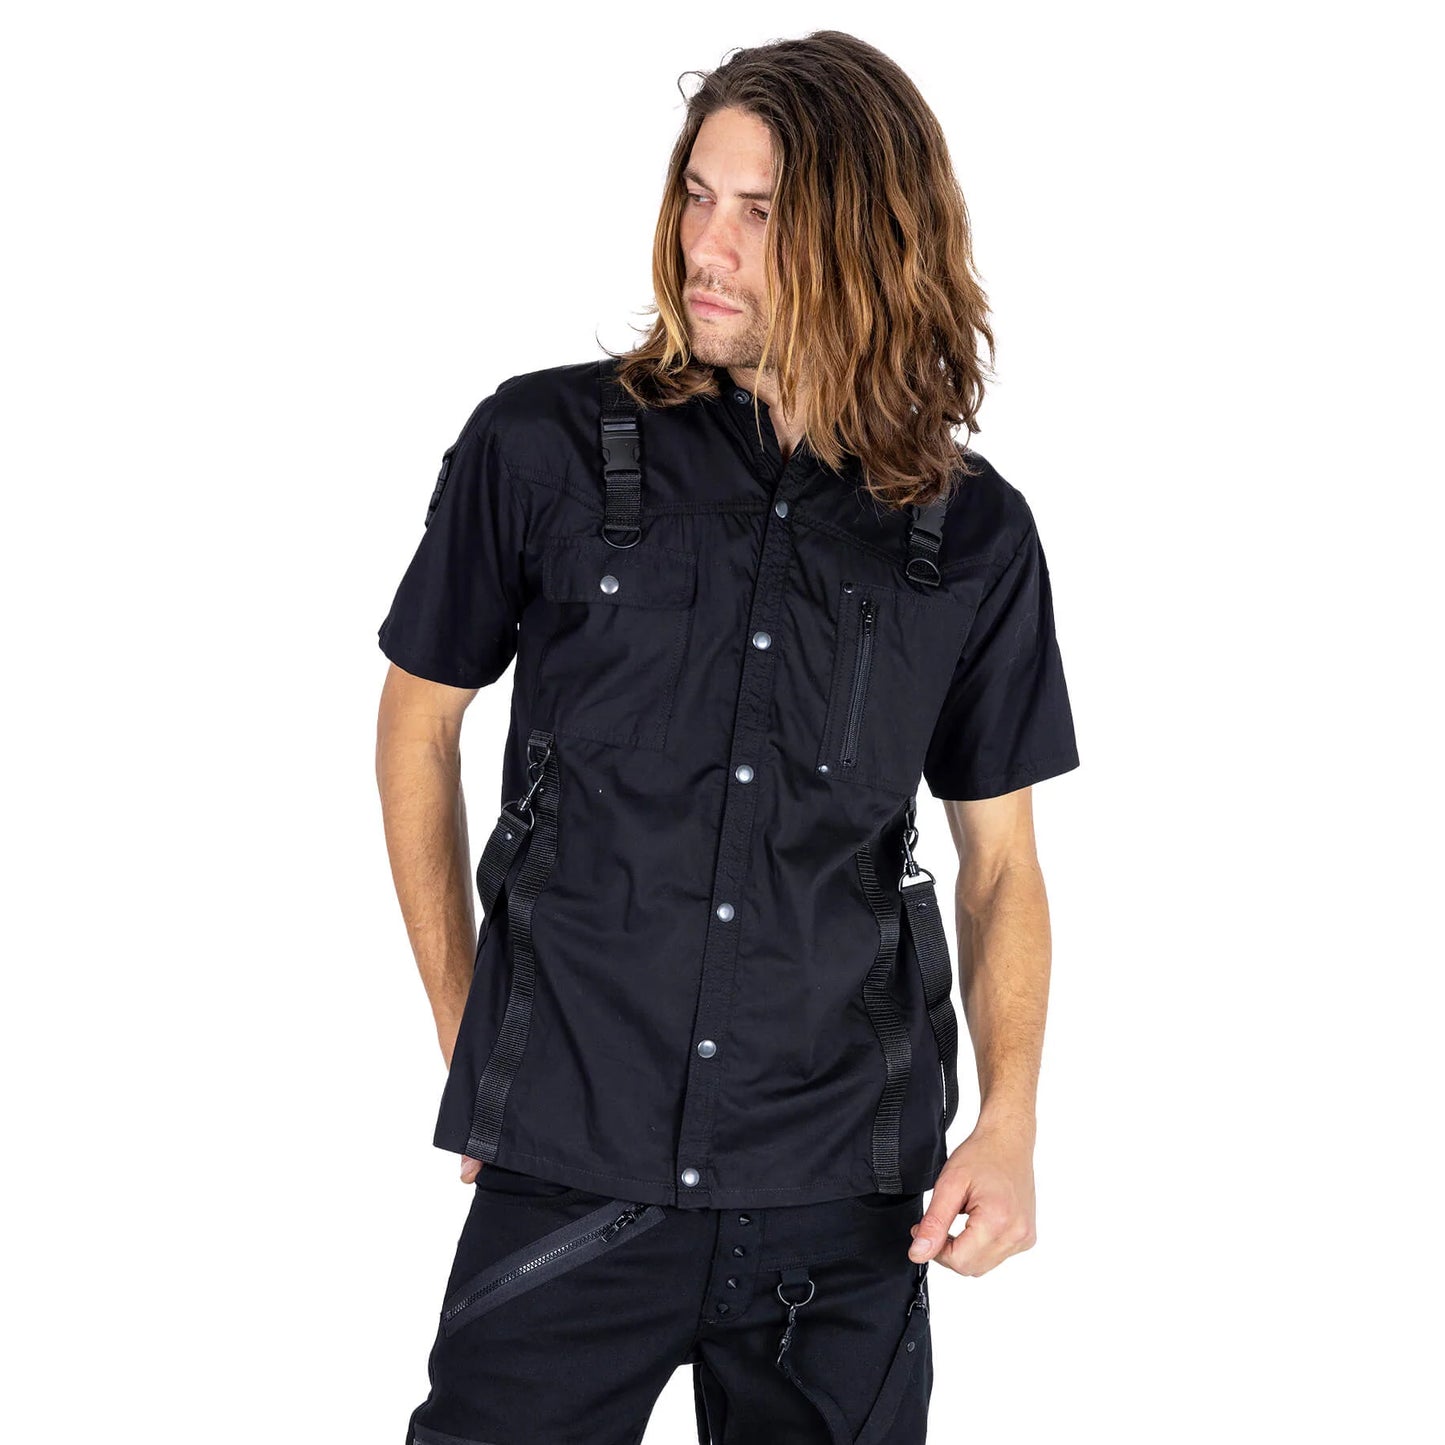 Schwarzes, kurzärmliges Hemd LEONIDAS SHIRT mit Riemen und Schnallen von Poizen Industries